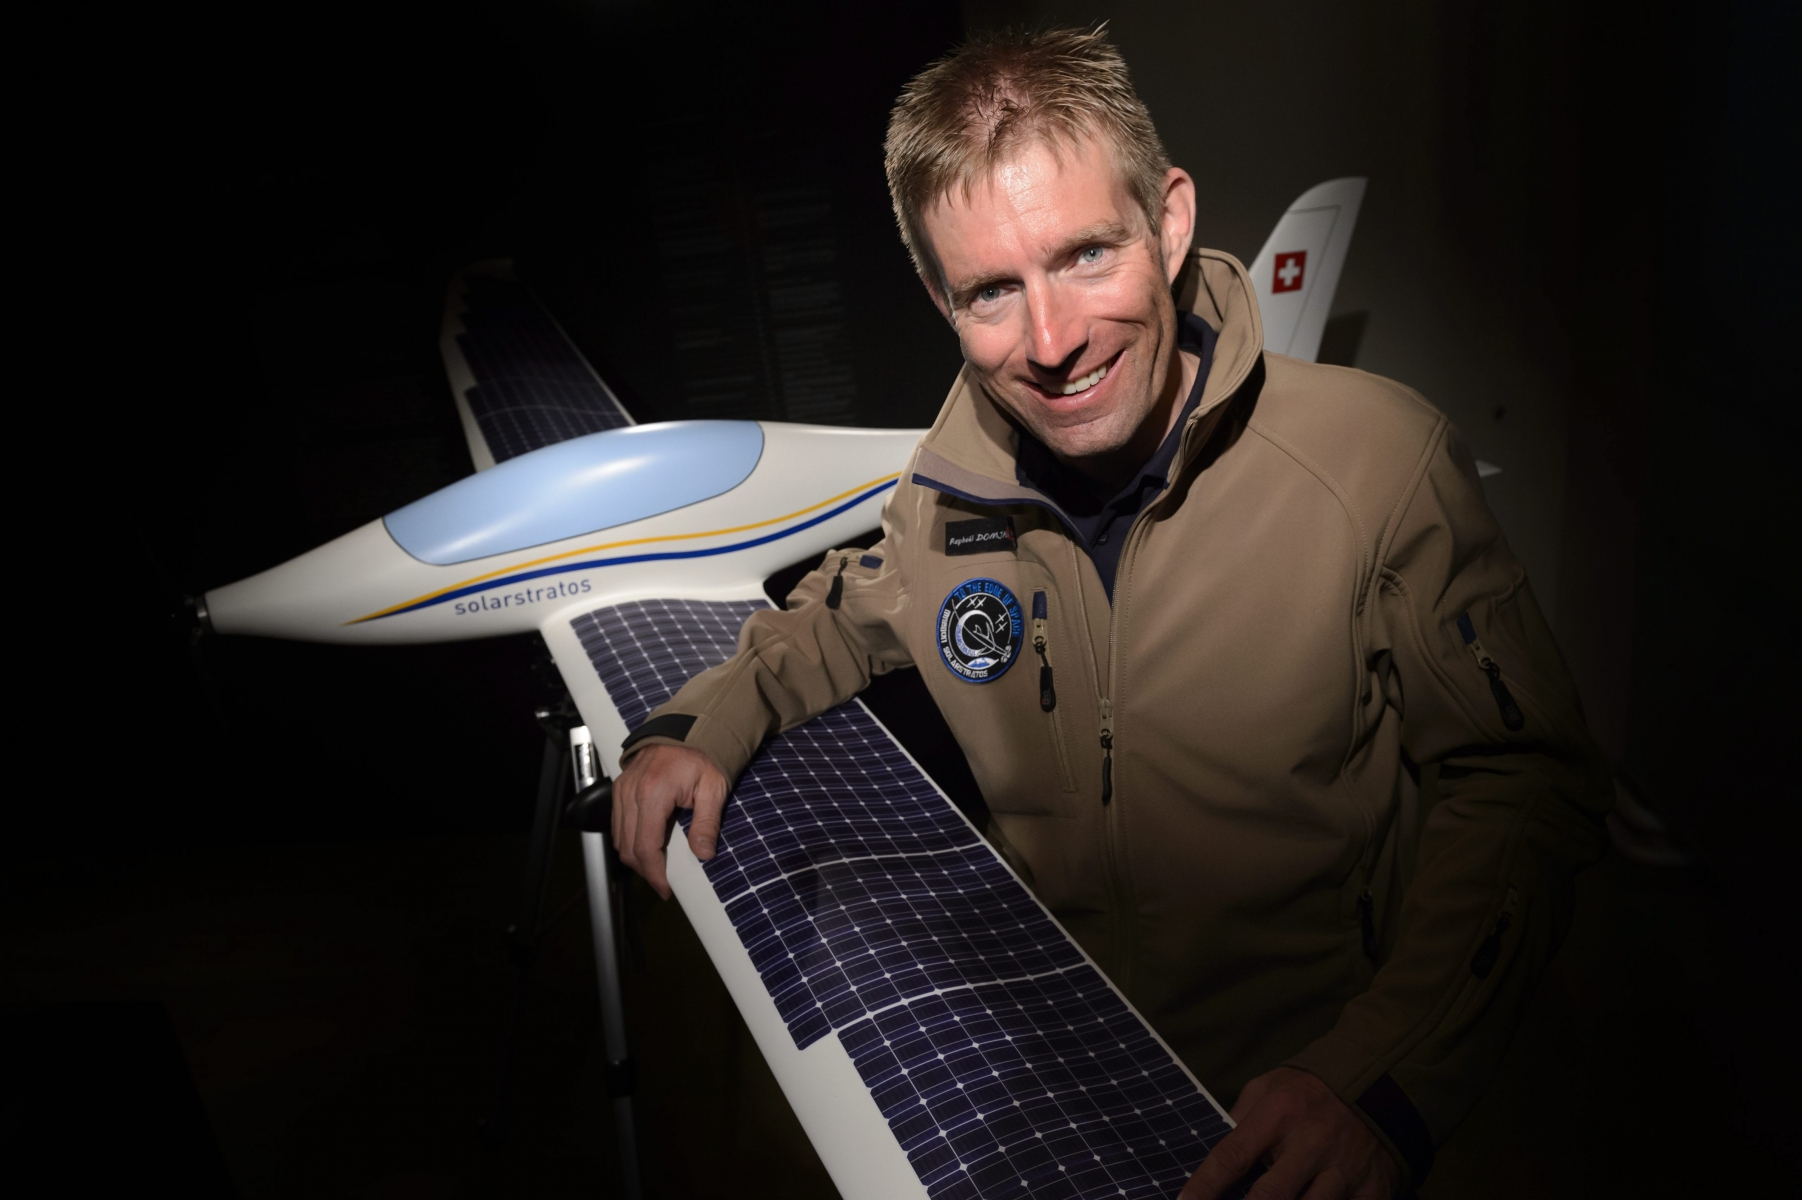 Raphaël Domjan avec la maquette de l'avion solaire SolarStratos.